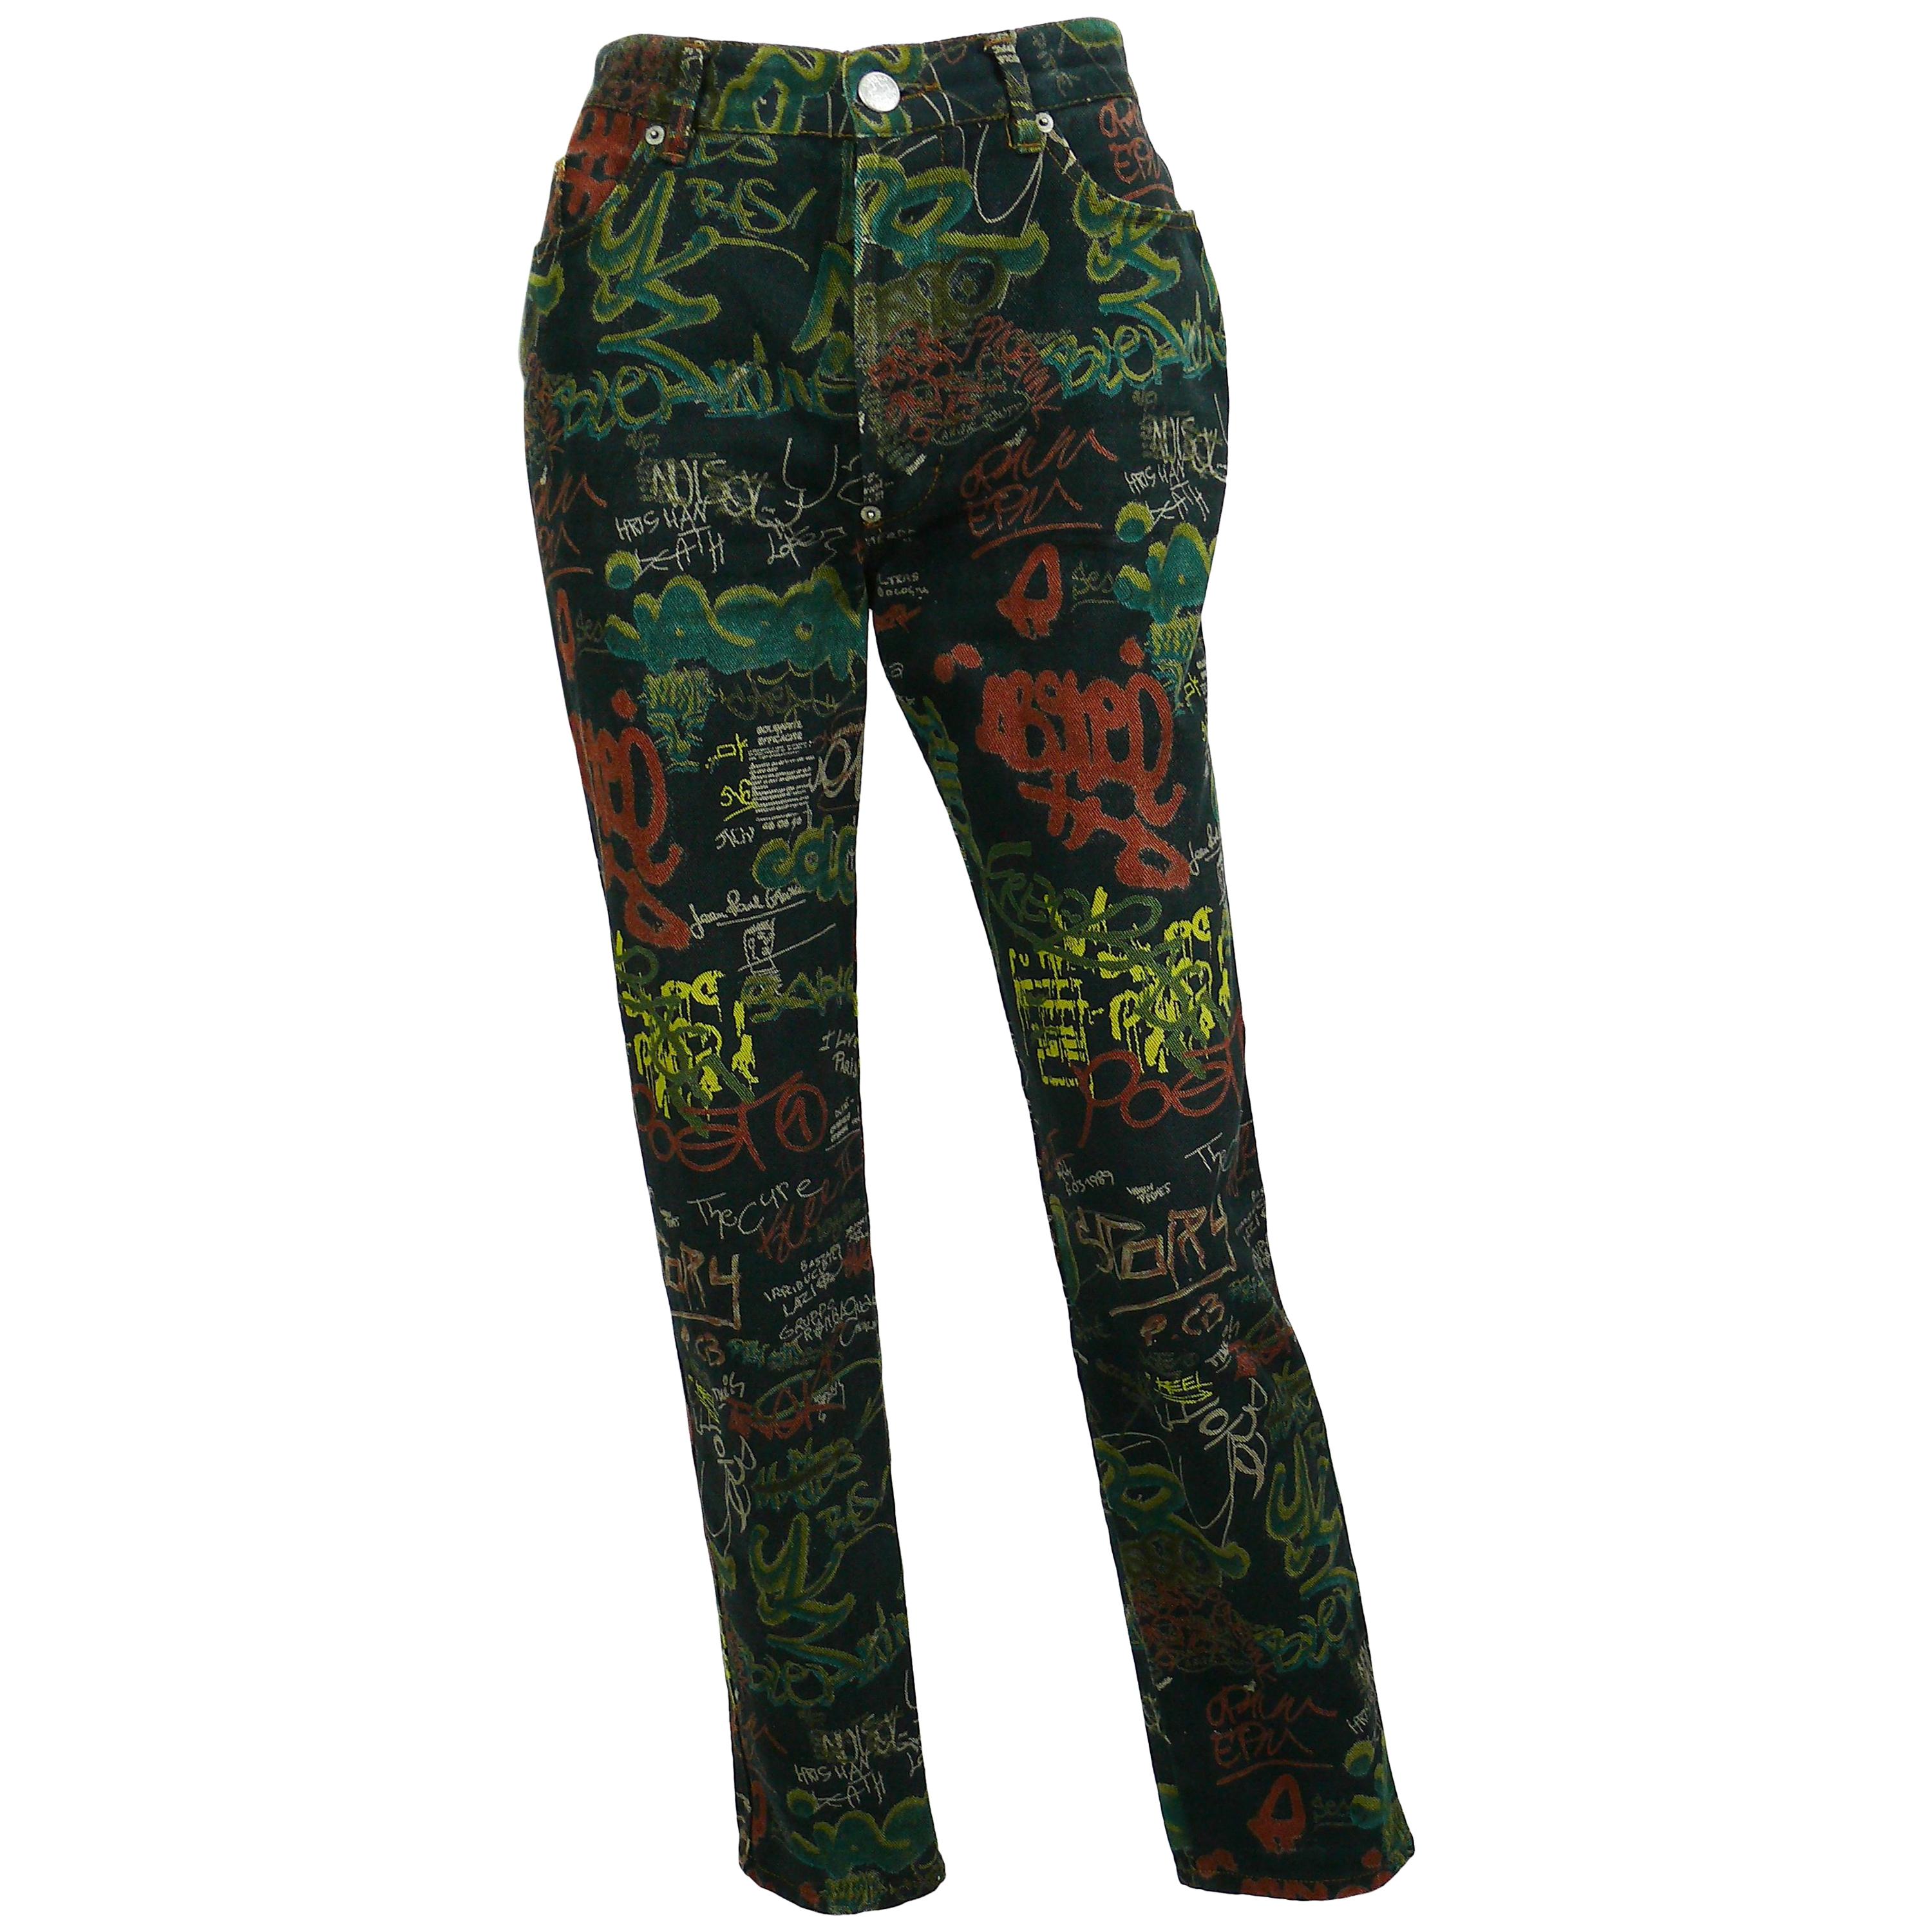 Jean Paul Gaultier Vintage Graffiti Print Pants Trousers US Size 30